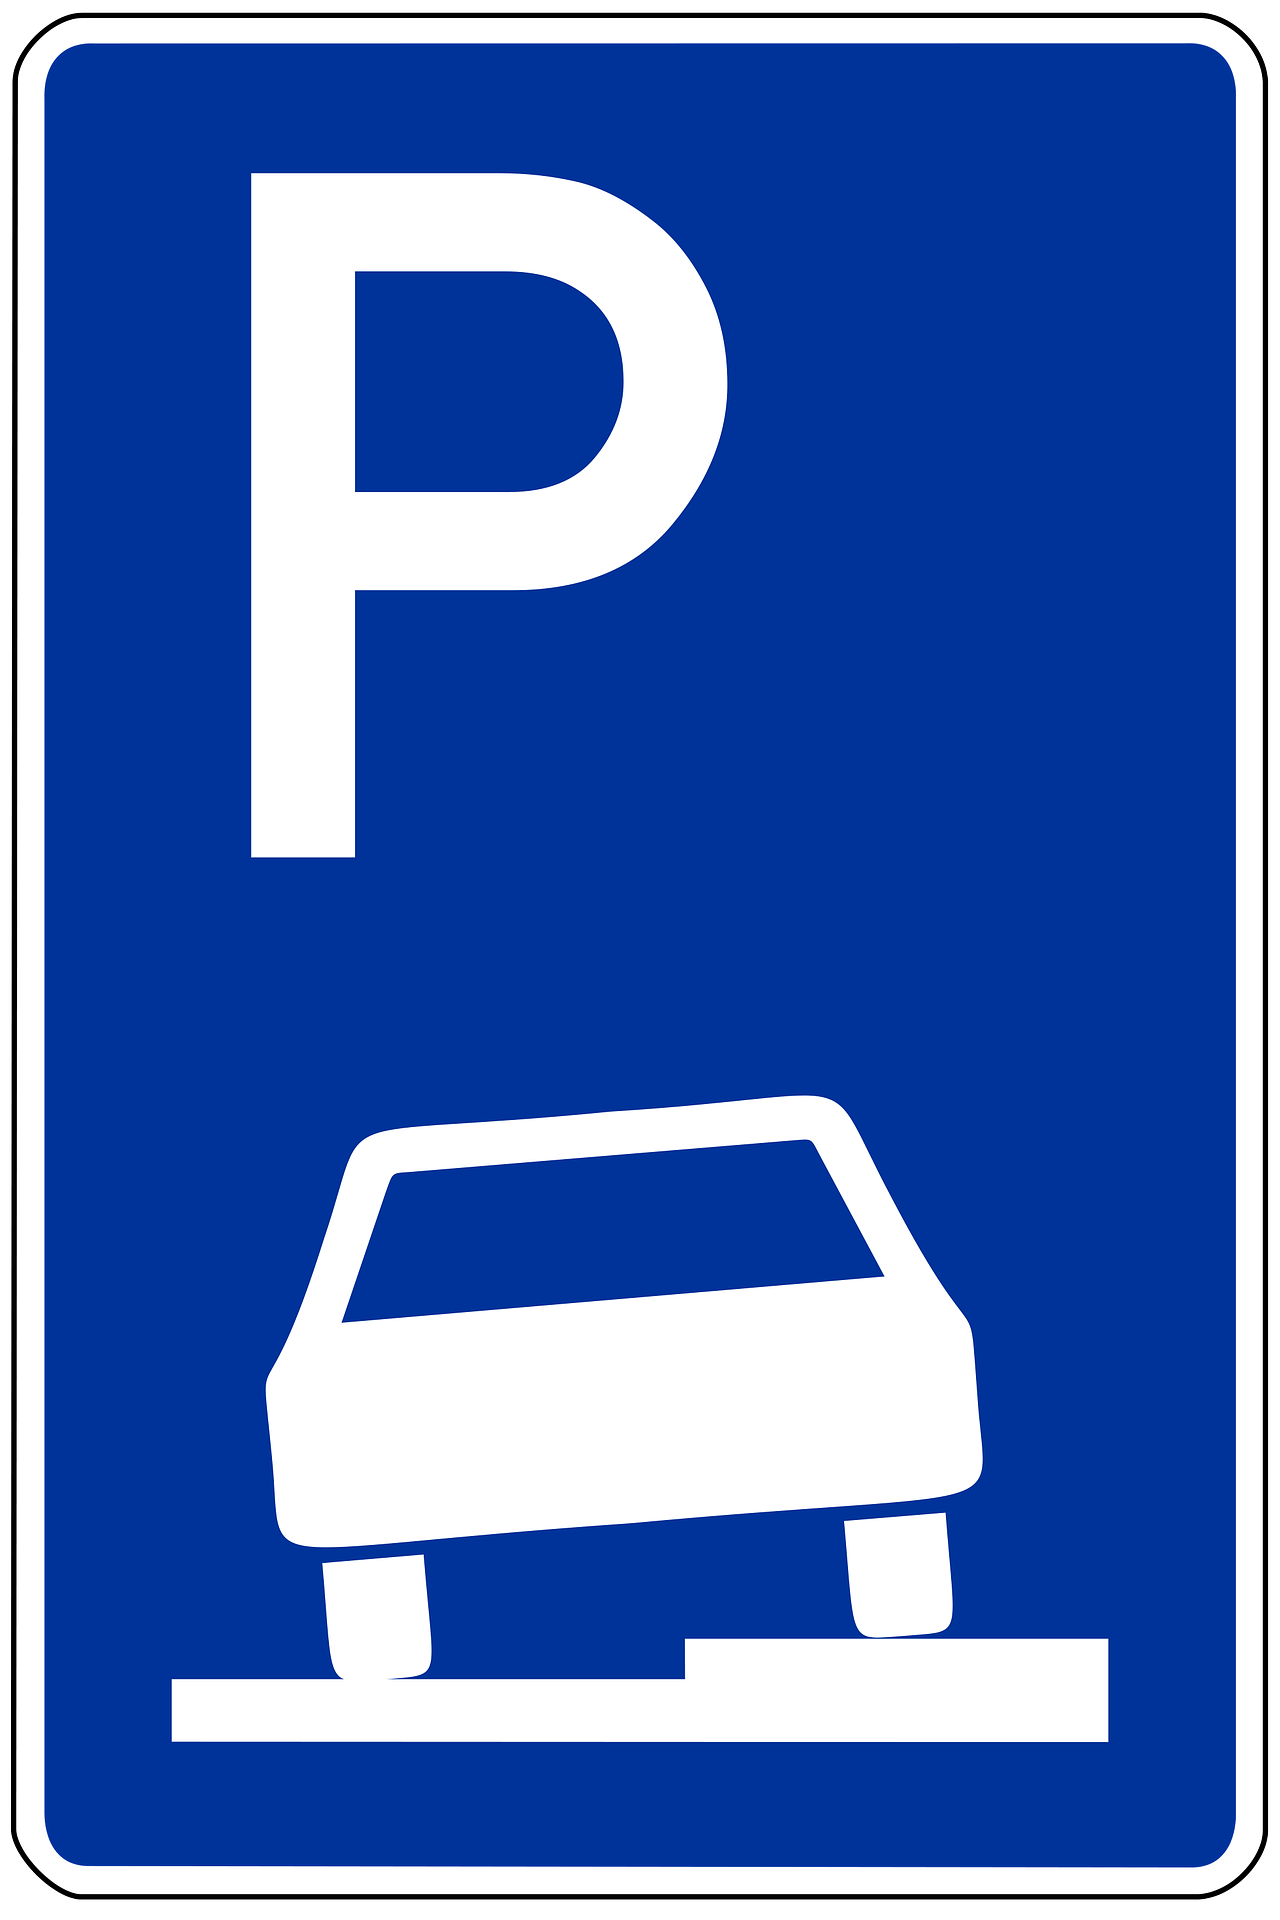 Verkehrszeichen 315 - nur hier gilt aufgesetztes Parken. Quelle: Pixabay